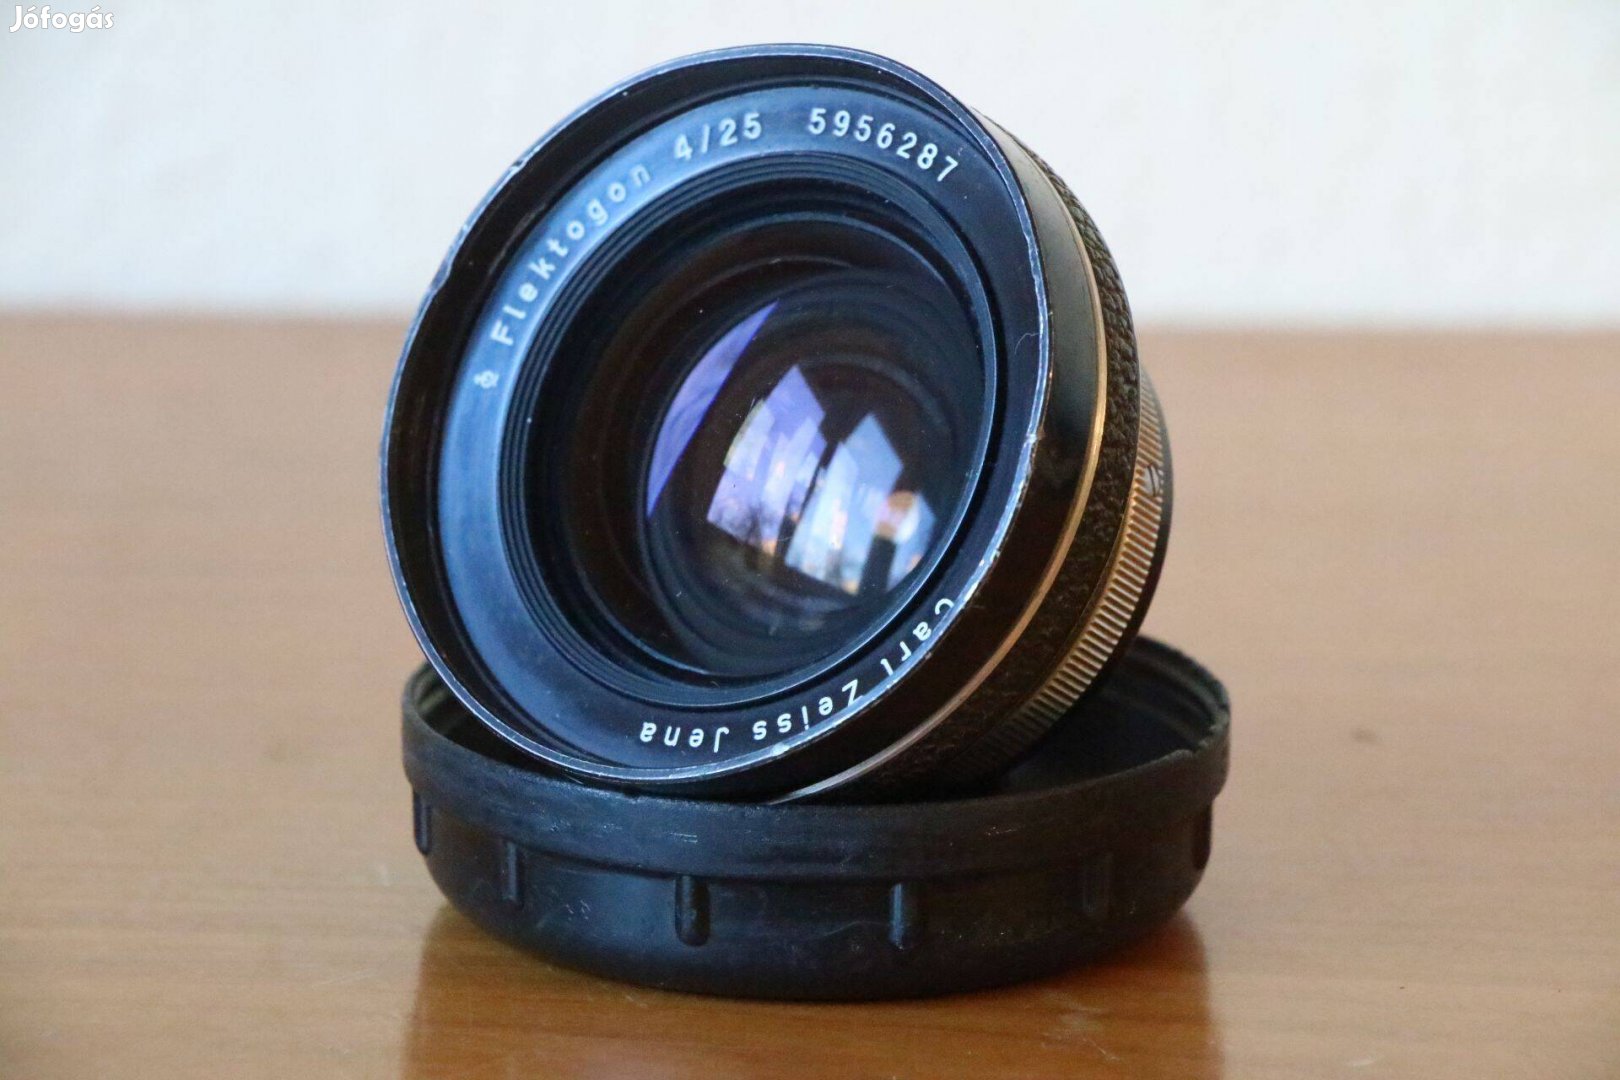 Carl Zeiss Flektogon 25mm / f4 objektív Exa csatlakozással